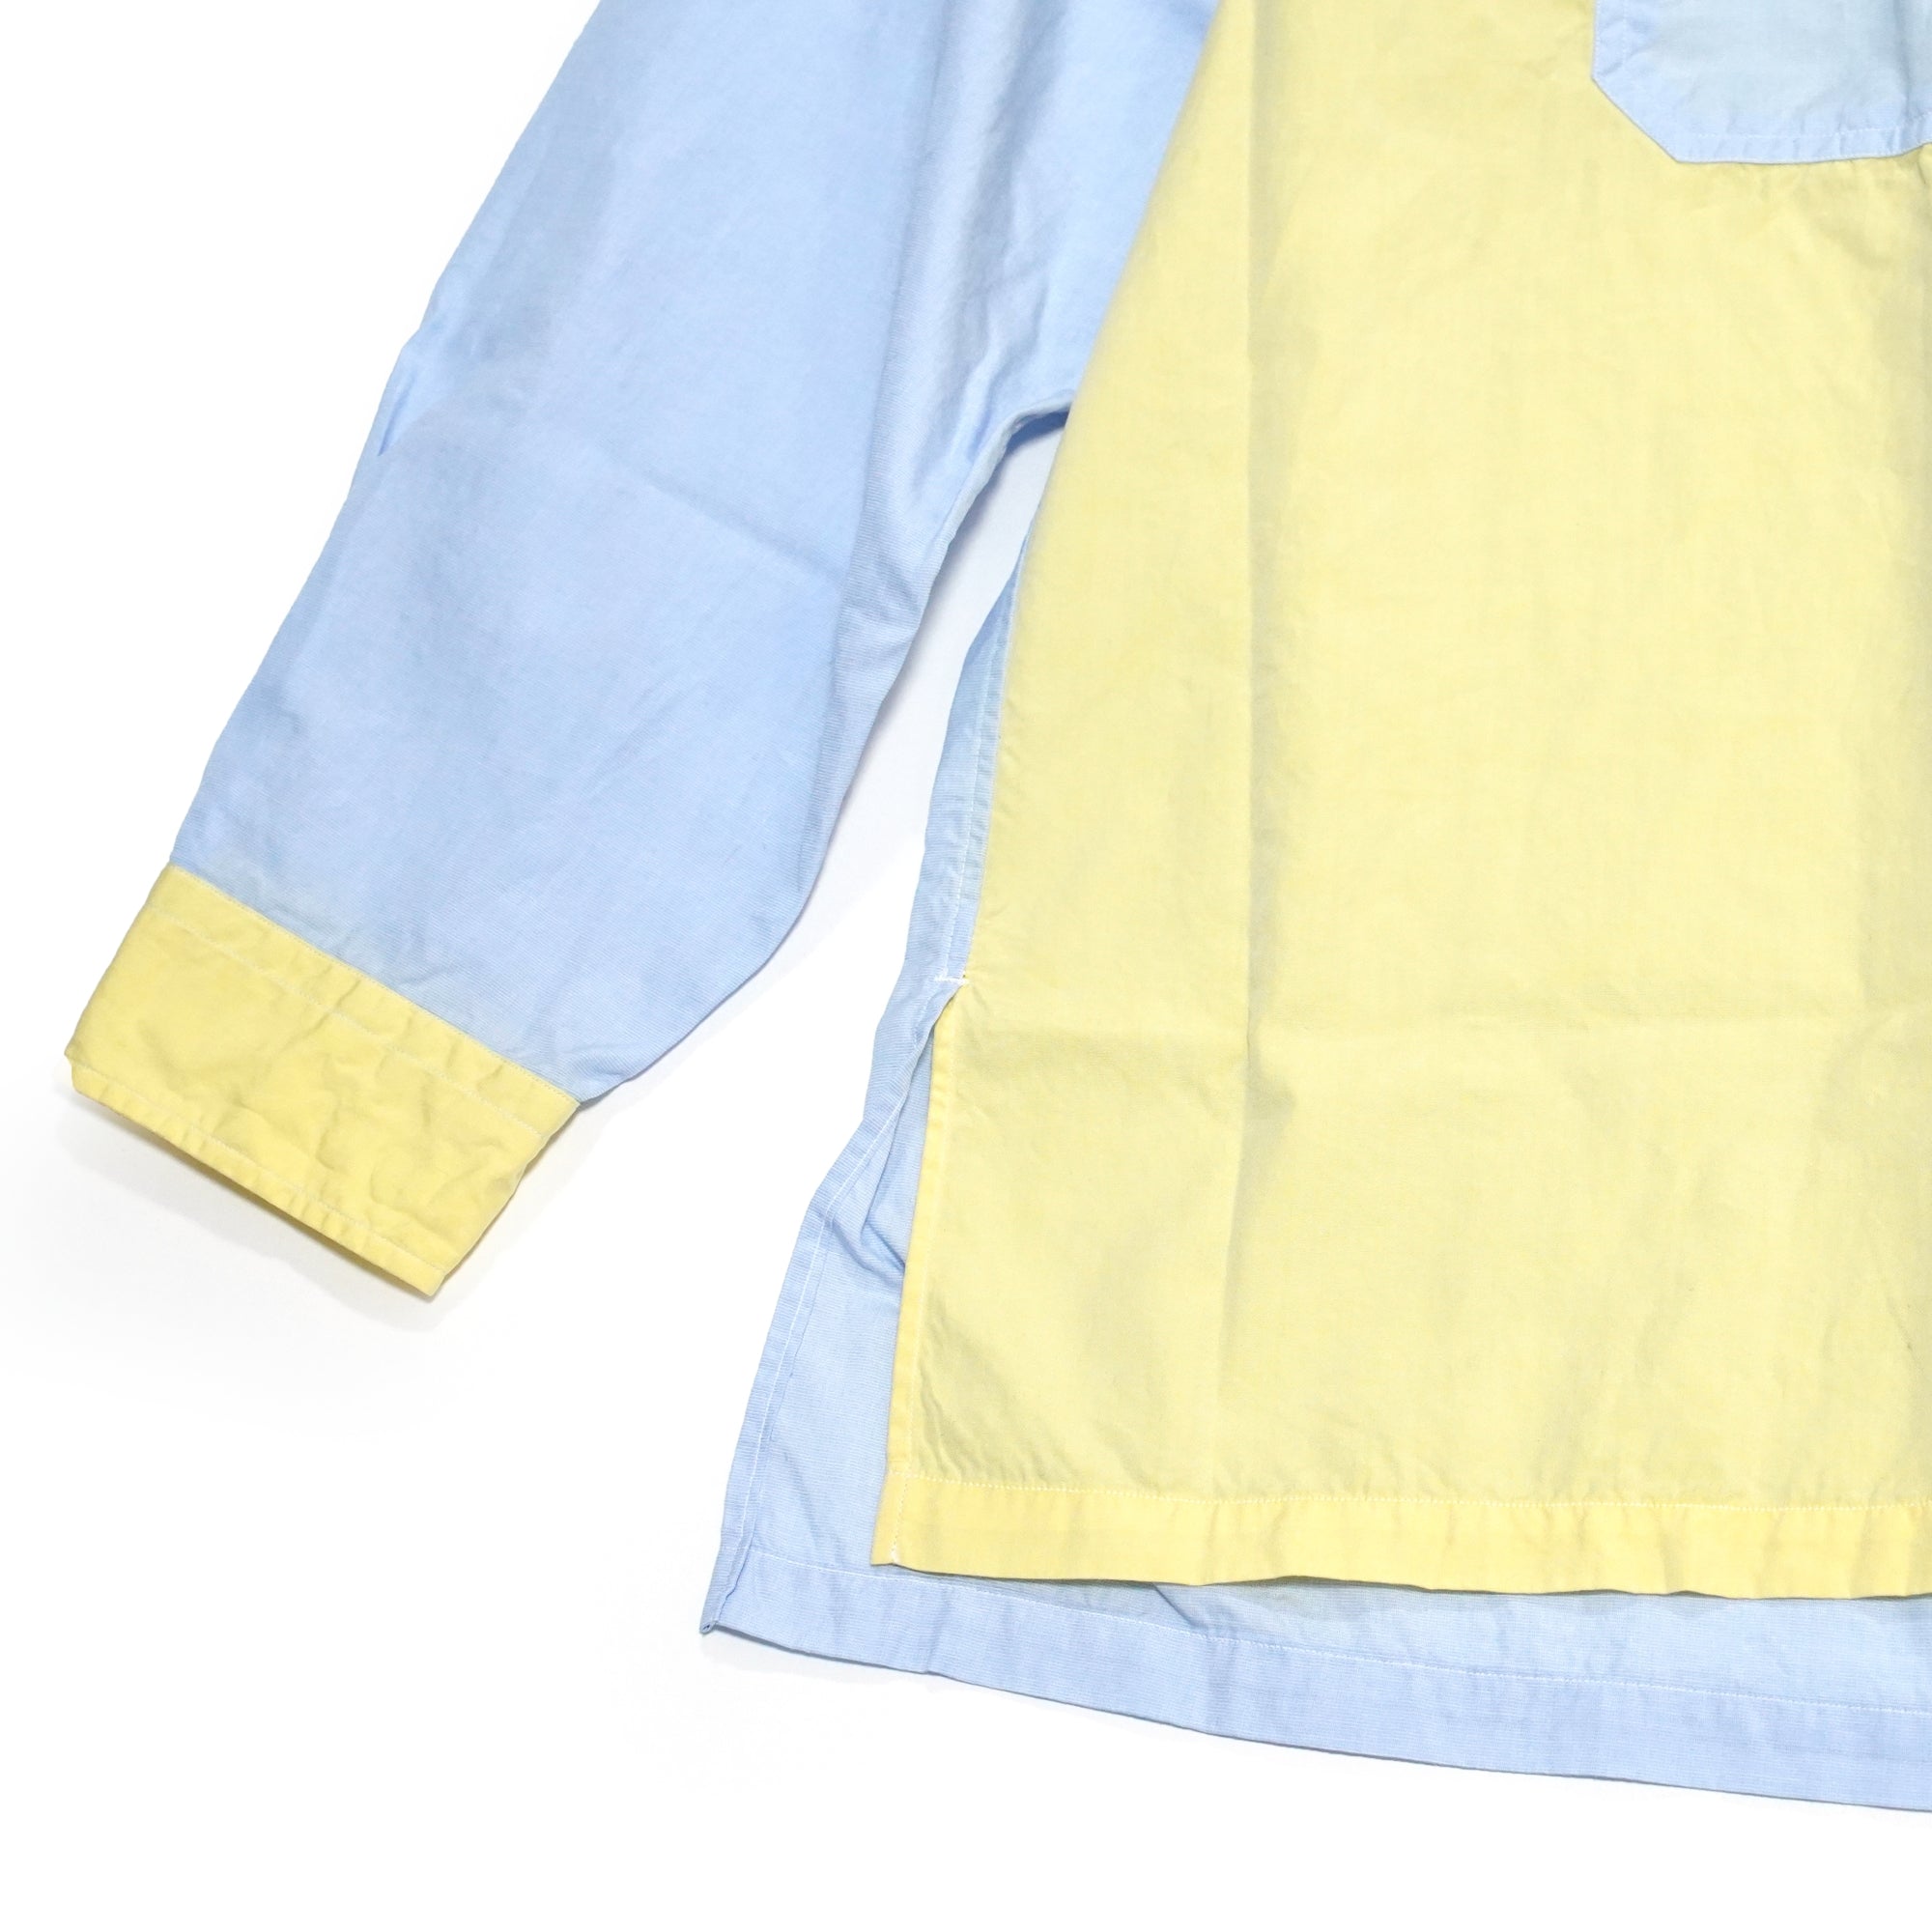 No:WPOCKETSH2021SSB | Name:W Pocket Shirts 100/2 | Color:Multi | Size-